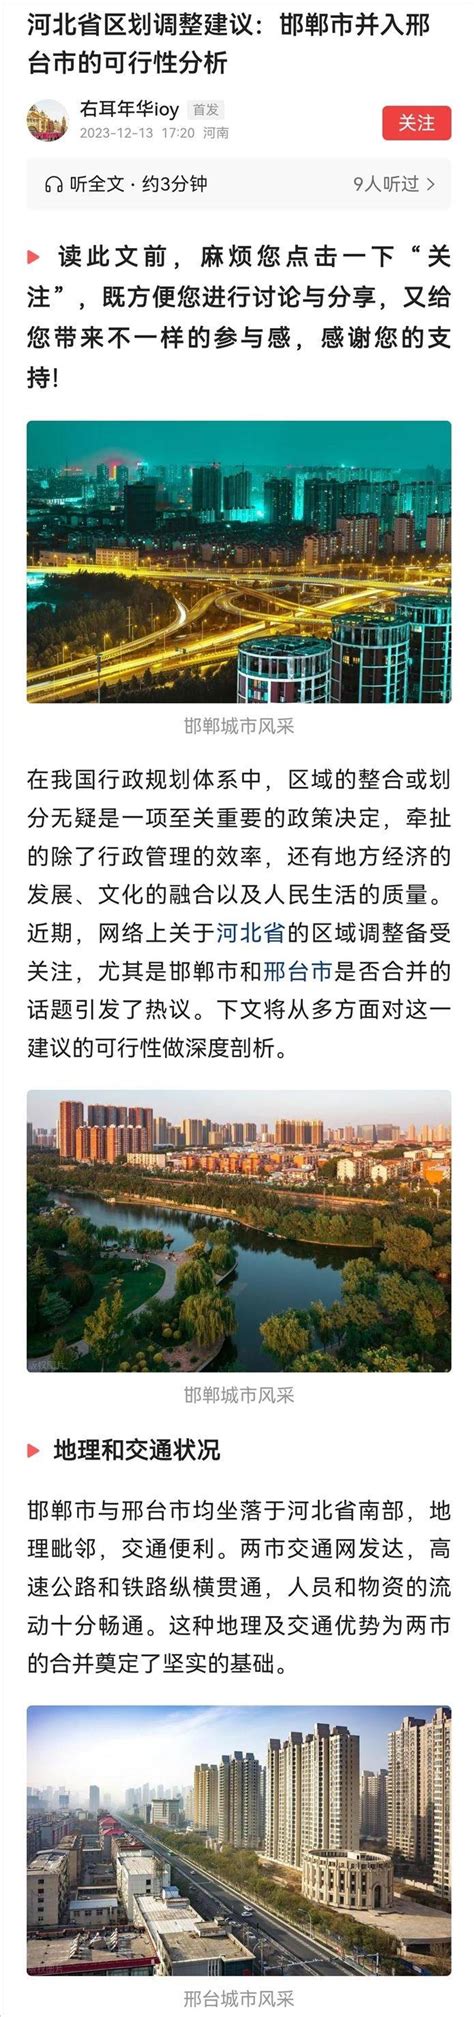 2016年邢台市地区生产总值统计分析_智研咨询